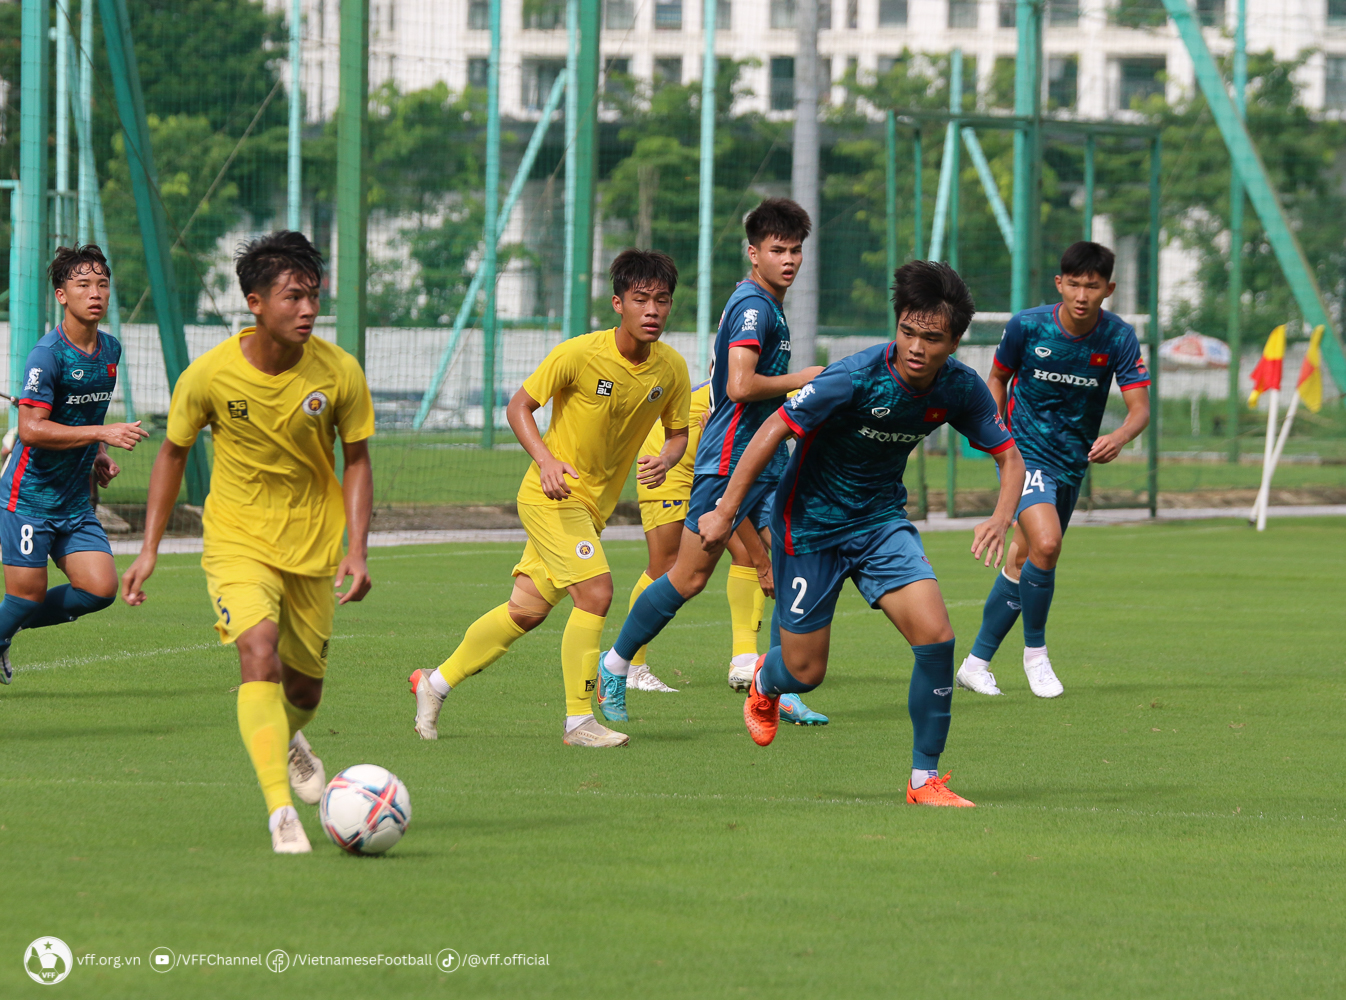 Đến phút 78, U21 Hà Nội có bàn gỡ hòa tỉ số 1-1.